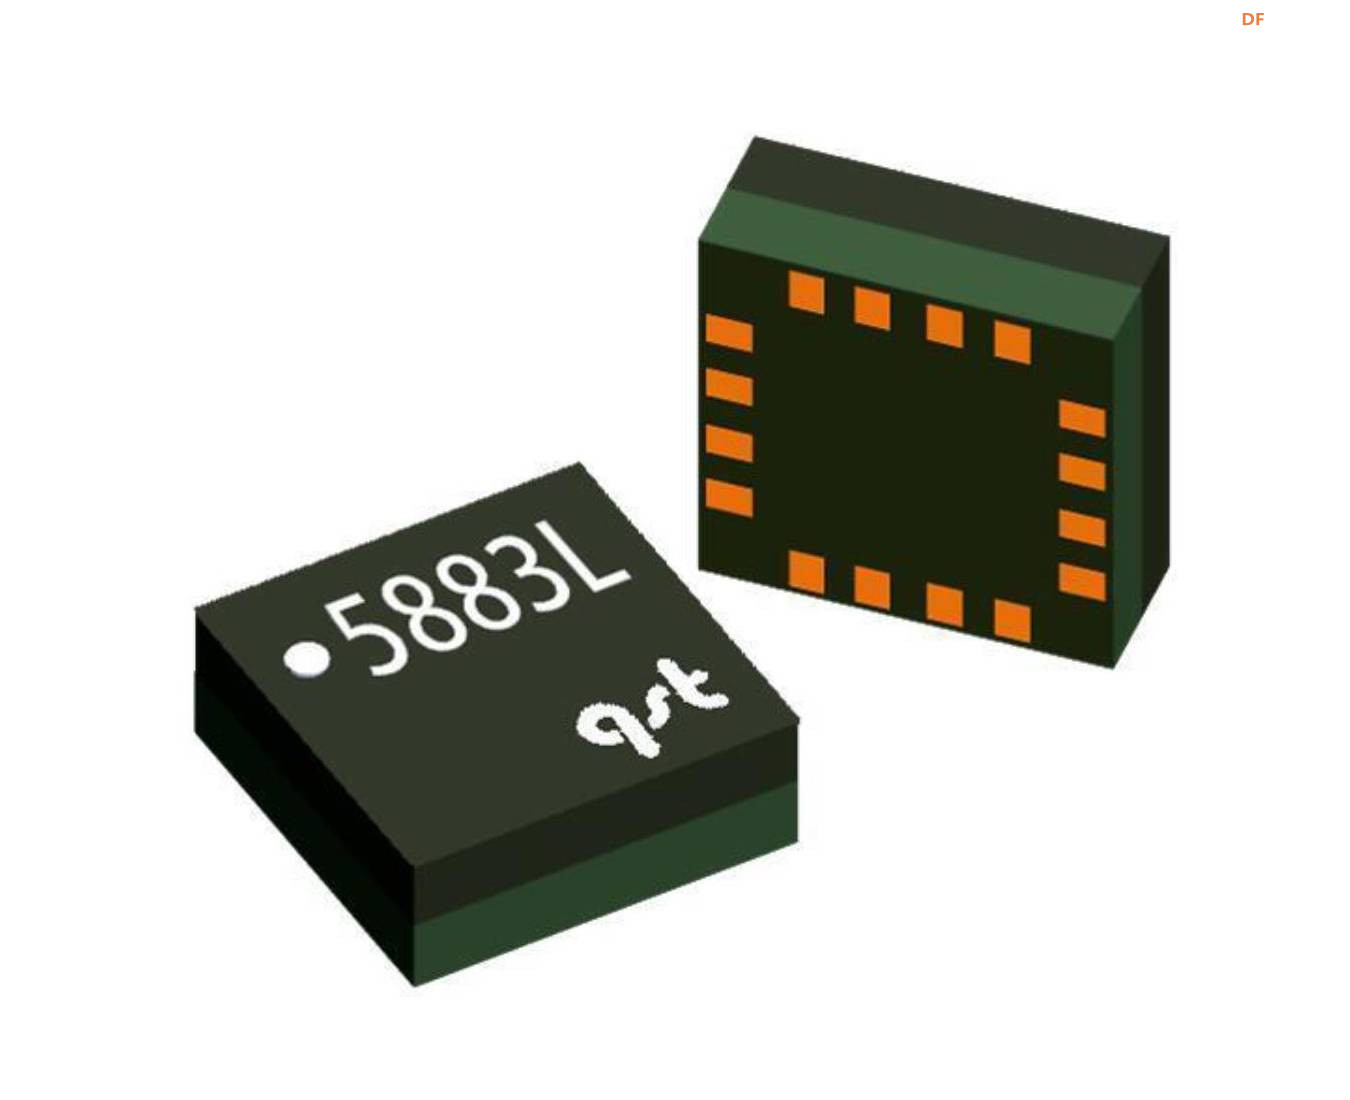 【Arduino】168种传感器模块系列实验（158）---QMC5883L三轴罗盘图1